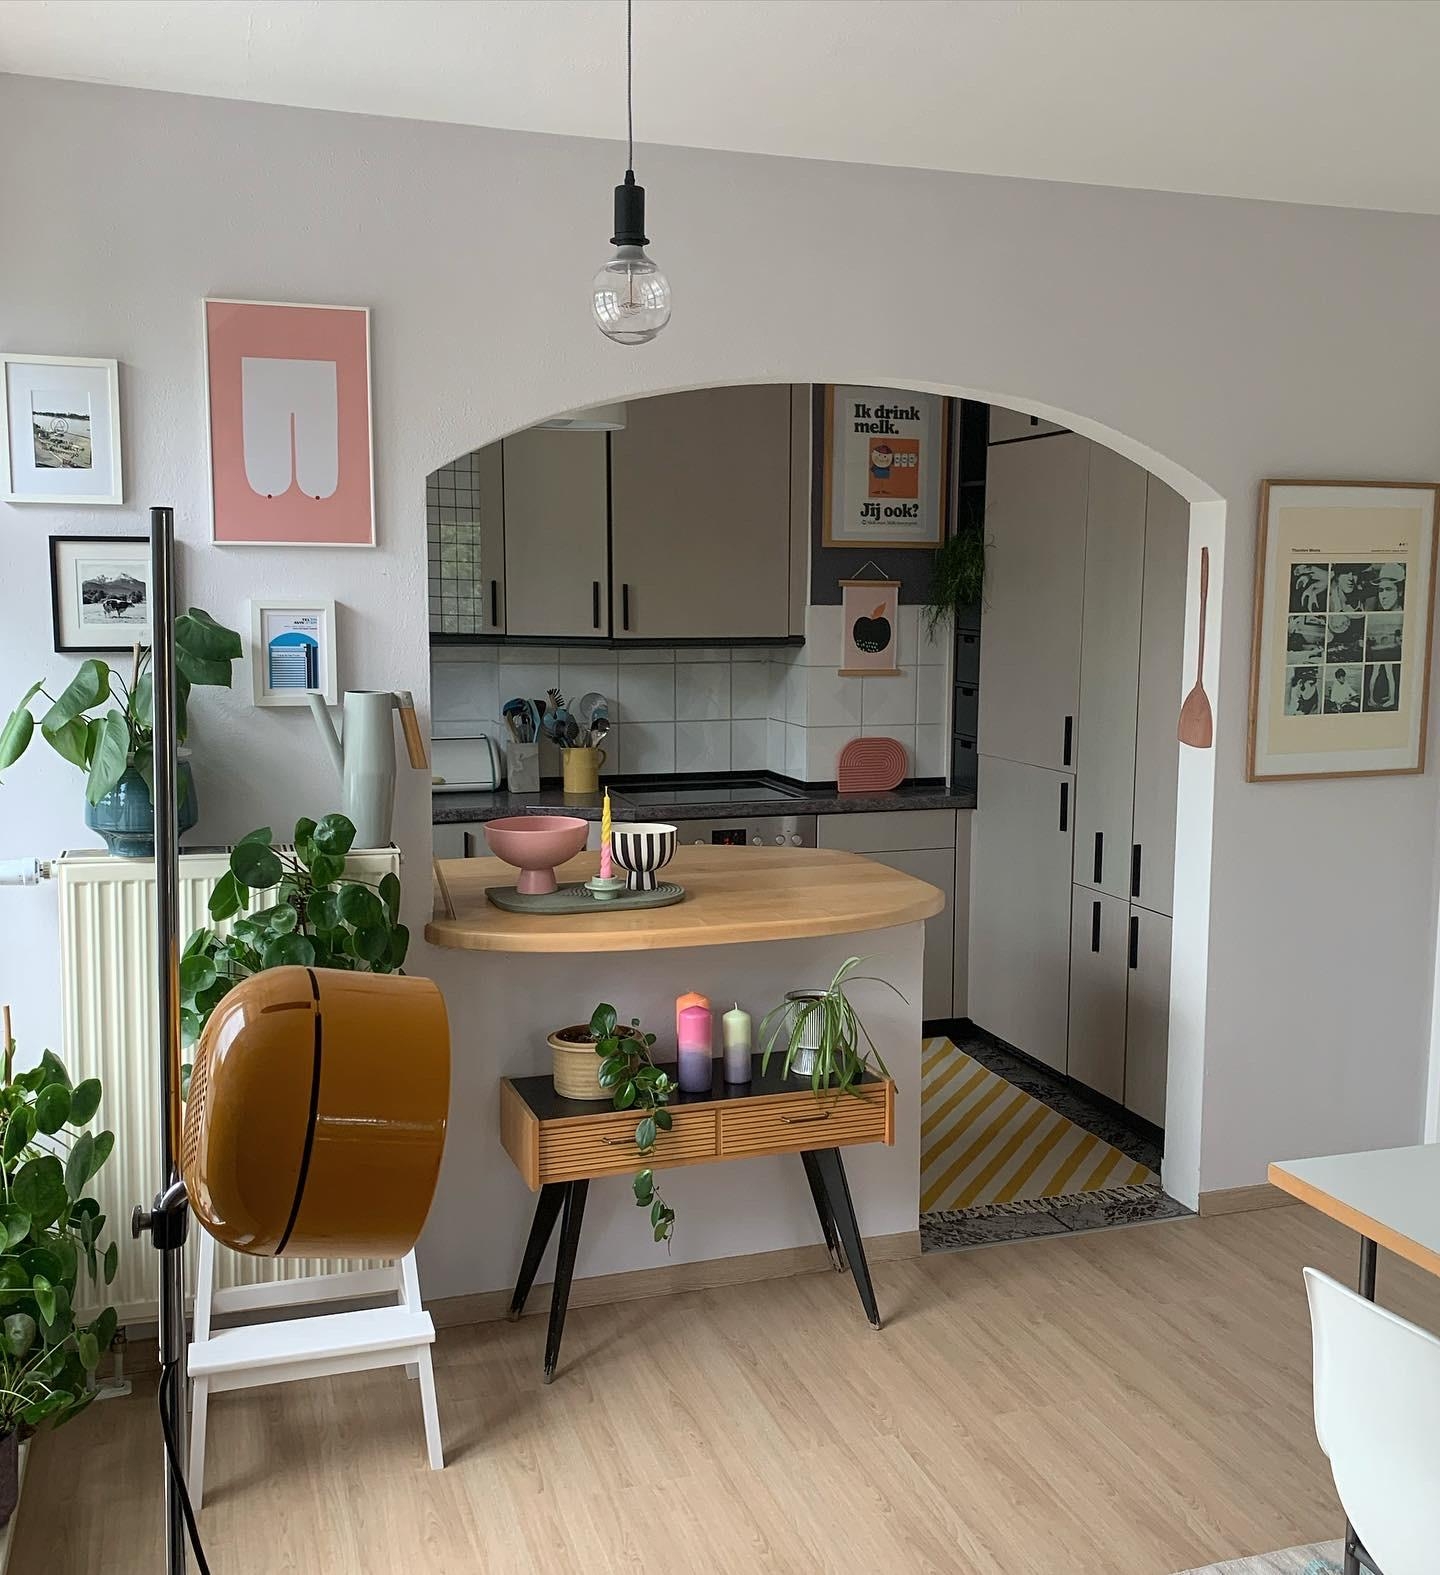 Langsam wird es in der neuen Wohnung ☺️
#küche #farbe #flieder #pflanzen #bilder #vintage